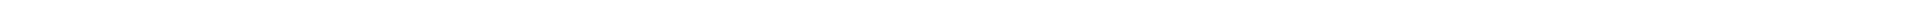 Детская стоматология в Алматы, Астане (Нур-Султан), Усть-Каменогорске, Атырау, Уральск, Кокшетау в Казахстане, фото 8